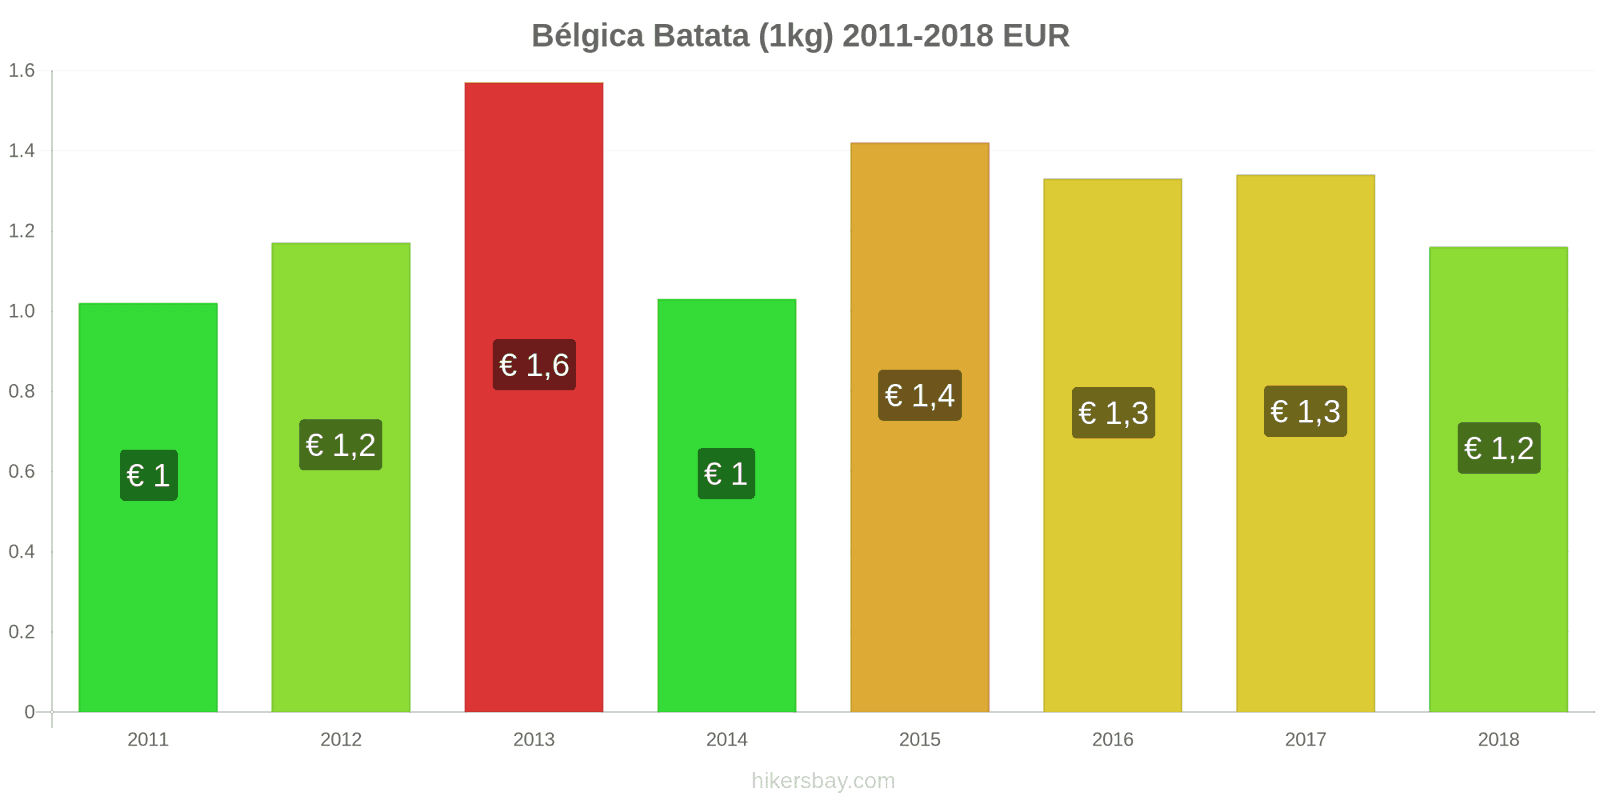 Bélgica mudanças de preços Batatas (1kg) hikersbay.com